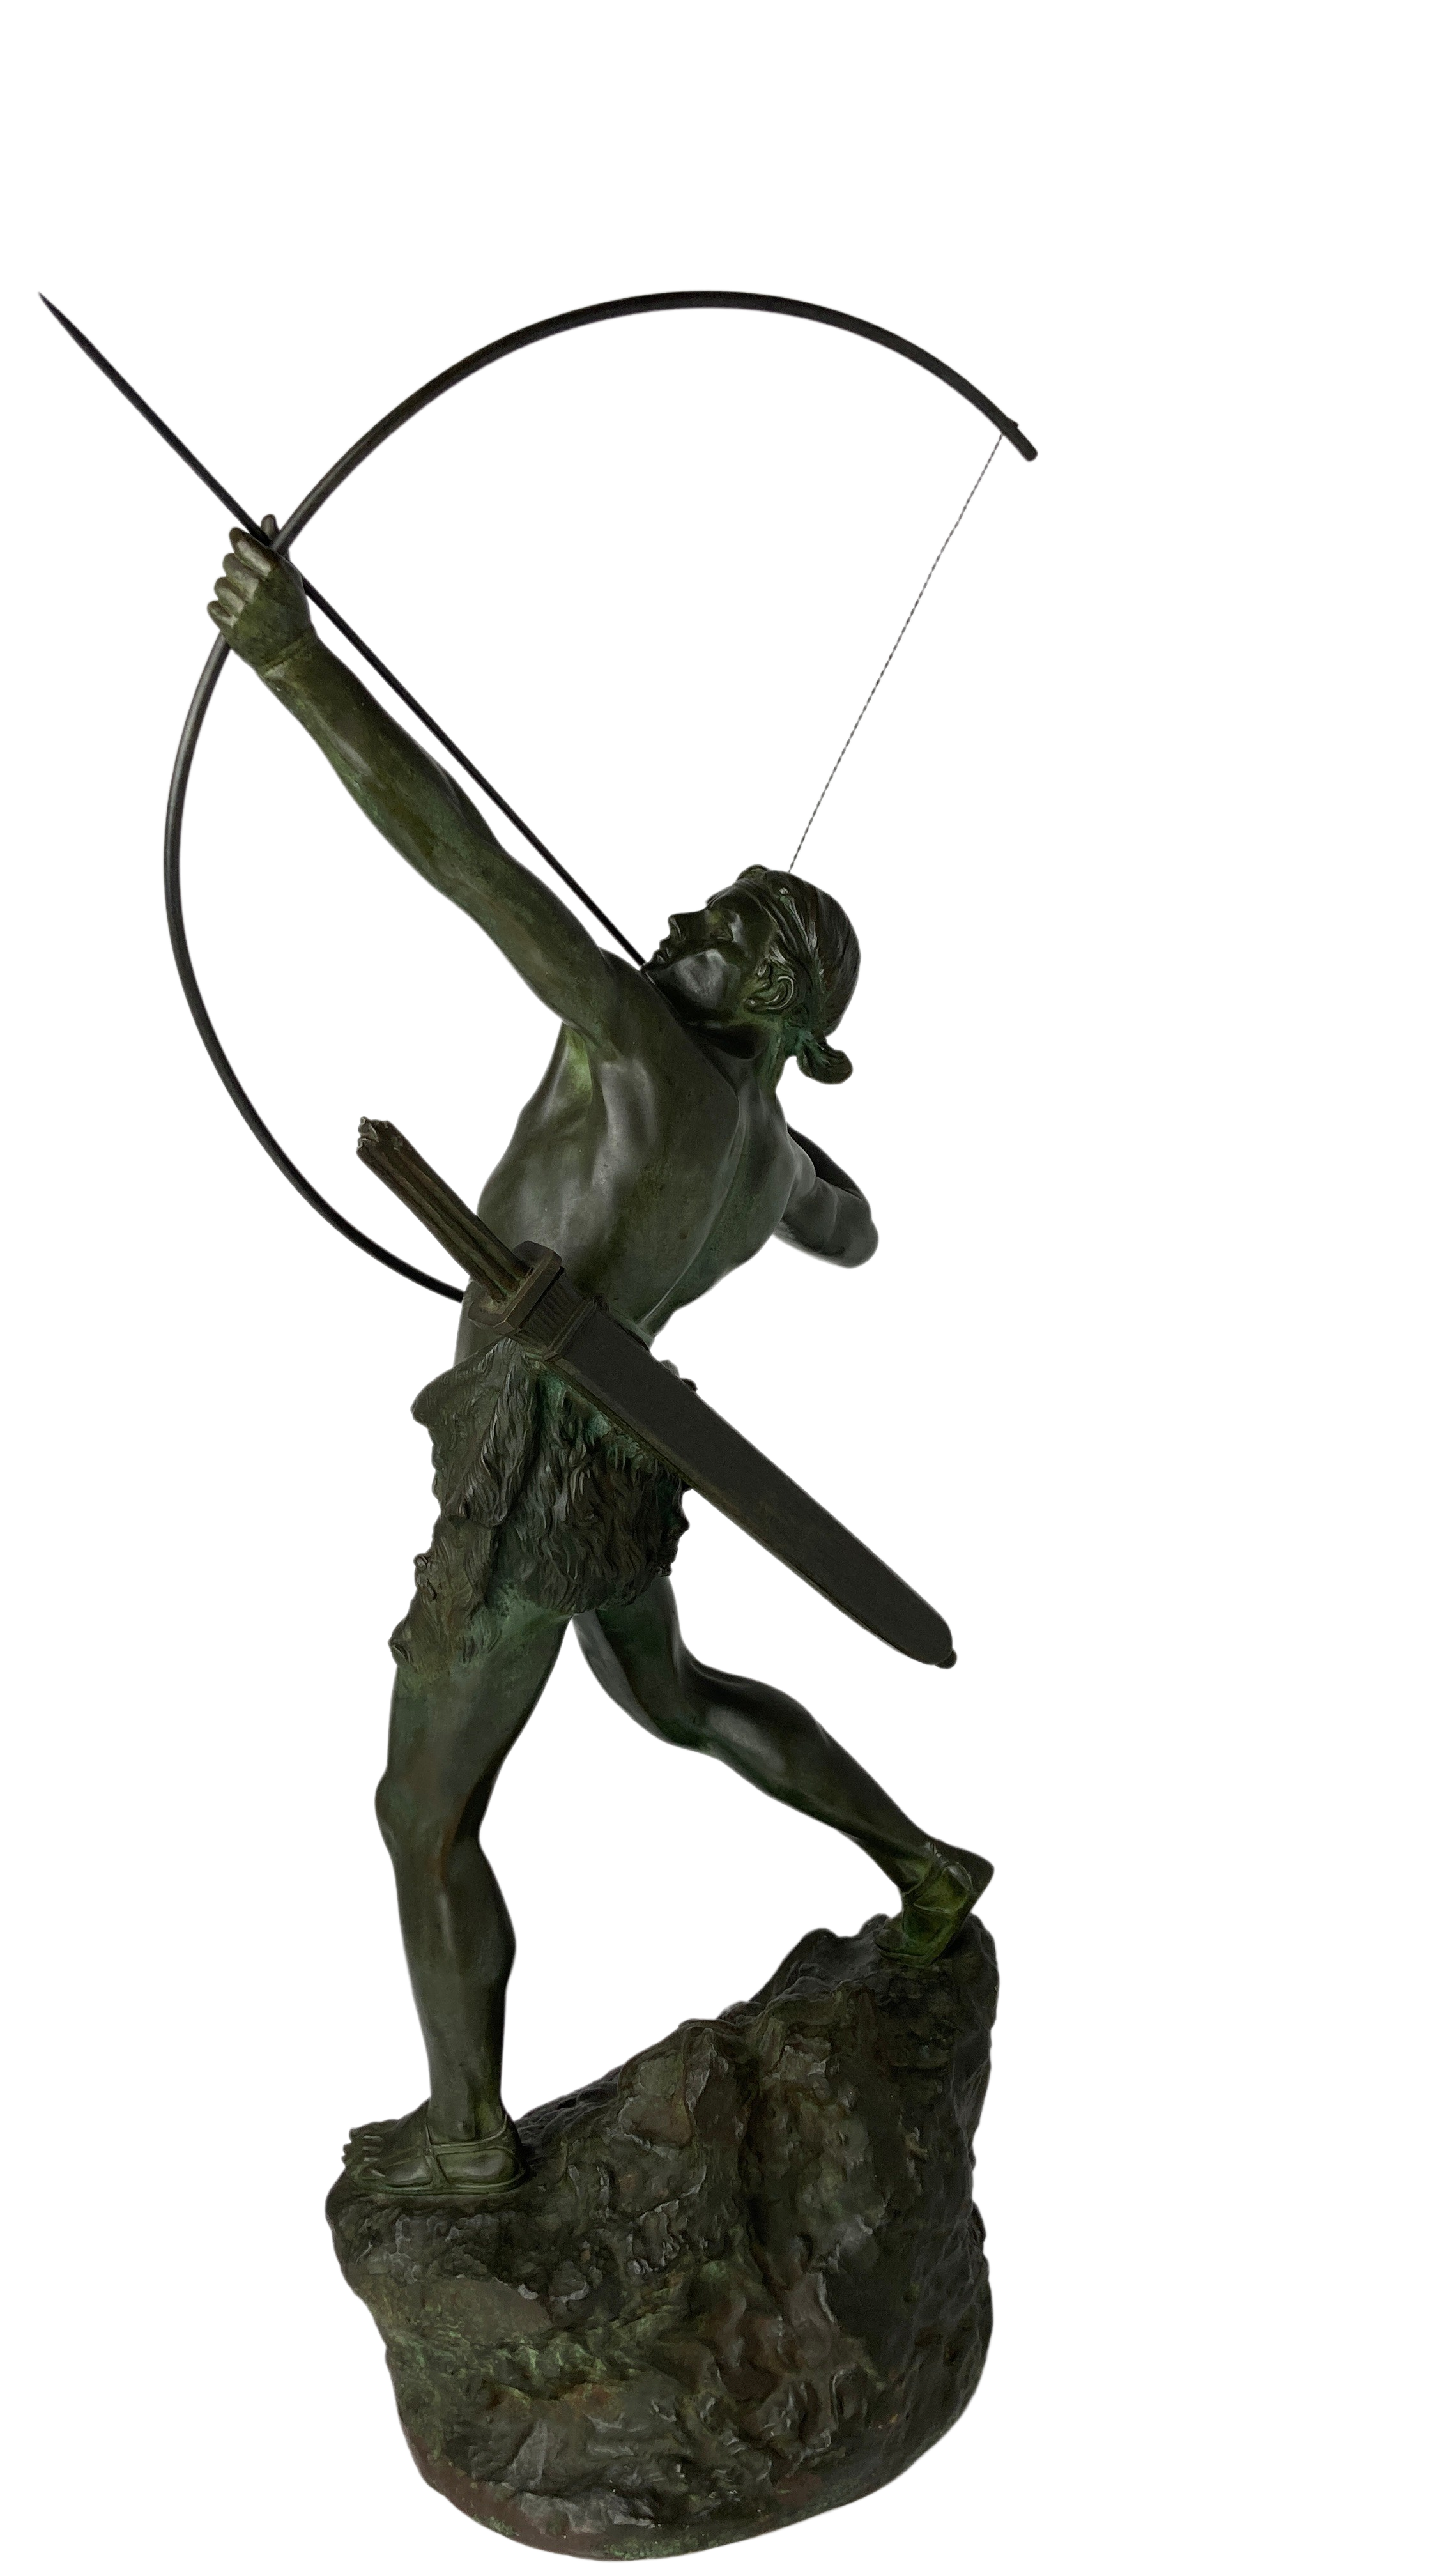 sculpture-bronze-Emile-gregoire-aurore-morisse-chestret5-affaire-conclue-4